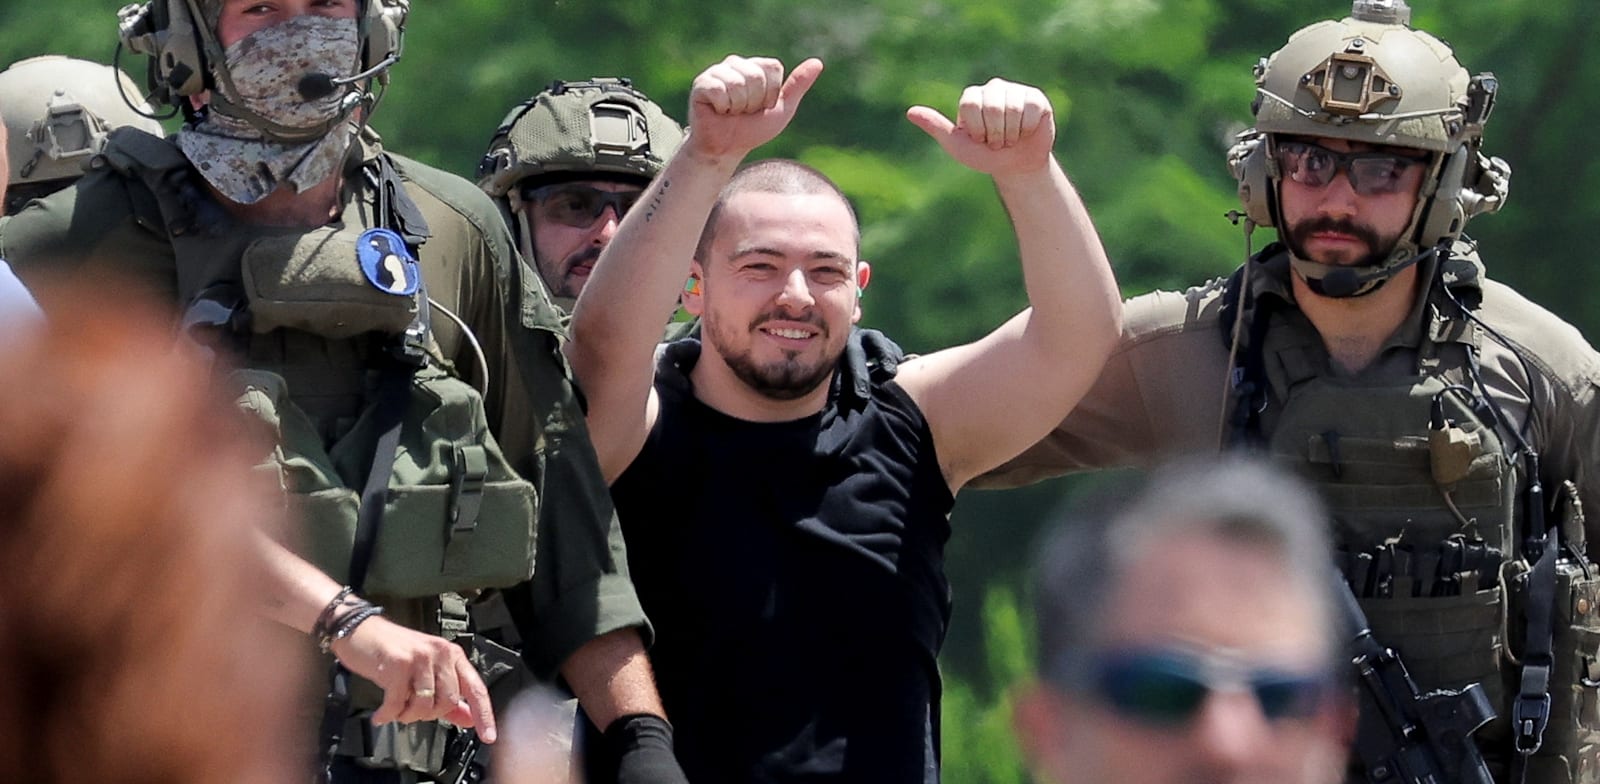 אלמוג מאיר לאחר השחרור מעזה / צילום: Reuters, Marko Djurica